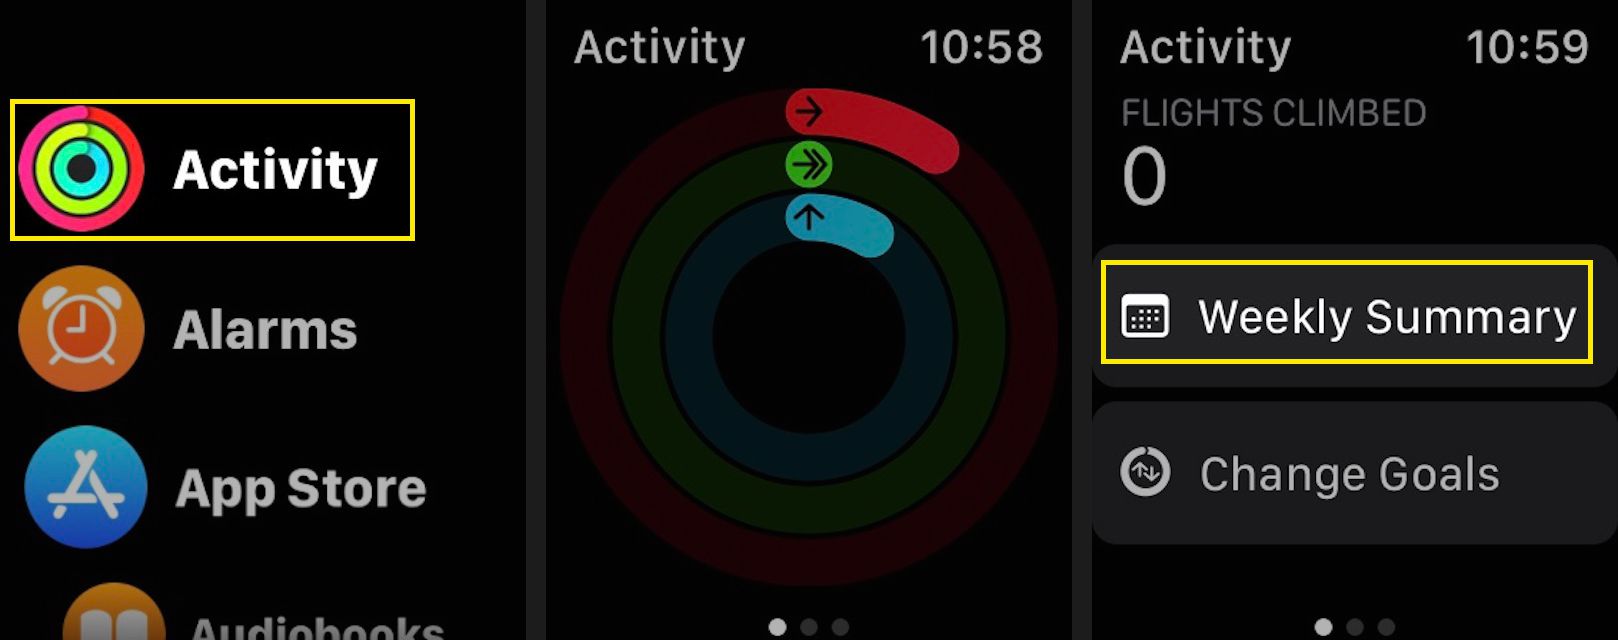 Visa din veckosammanfattning i Apple Watch Activity-appen